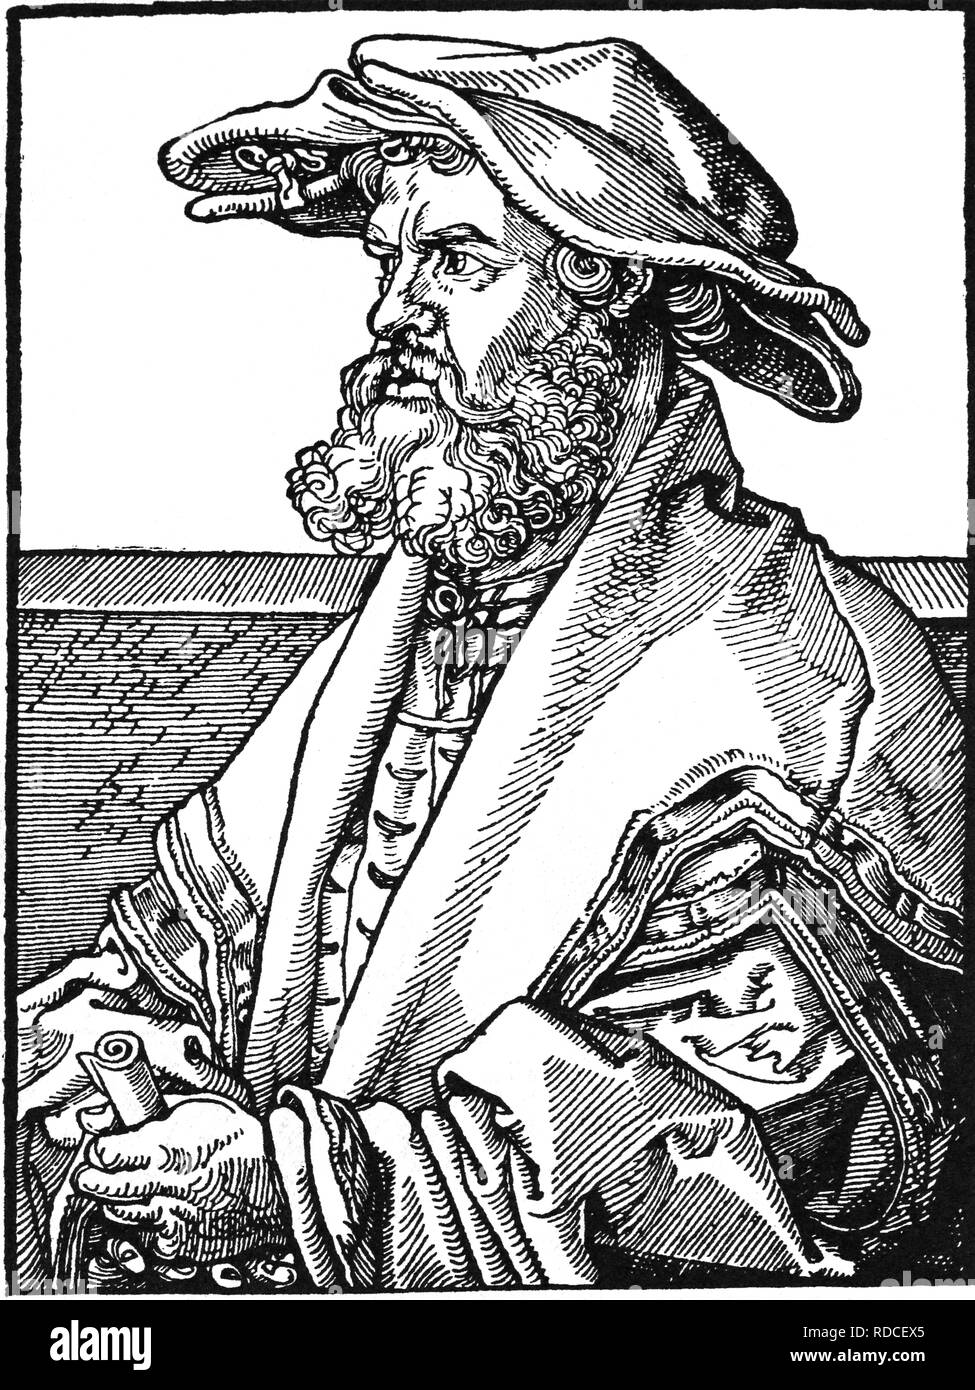 Eobanus Helius Hessus (1488-1540). Il tedesco poeta latino e successivamente di un umanista luterano. Incisione di A. Durer, 1526. Foto Stock